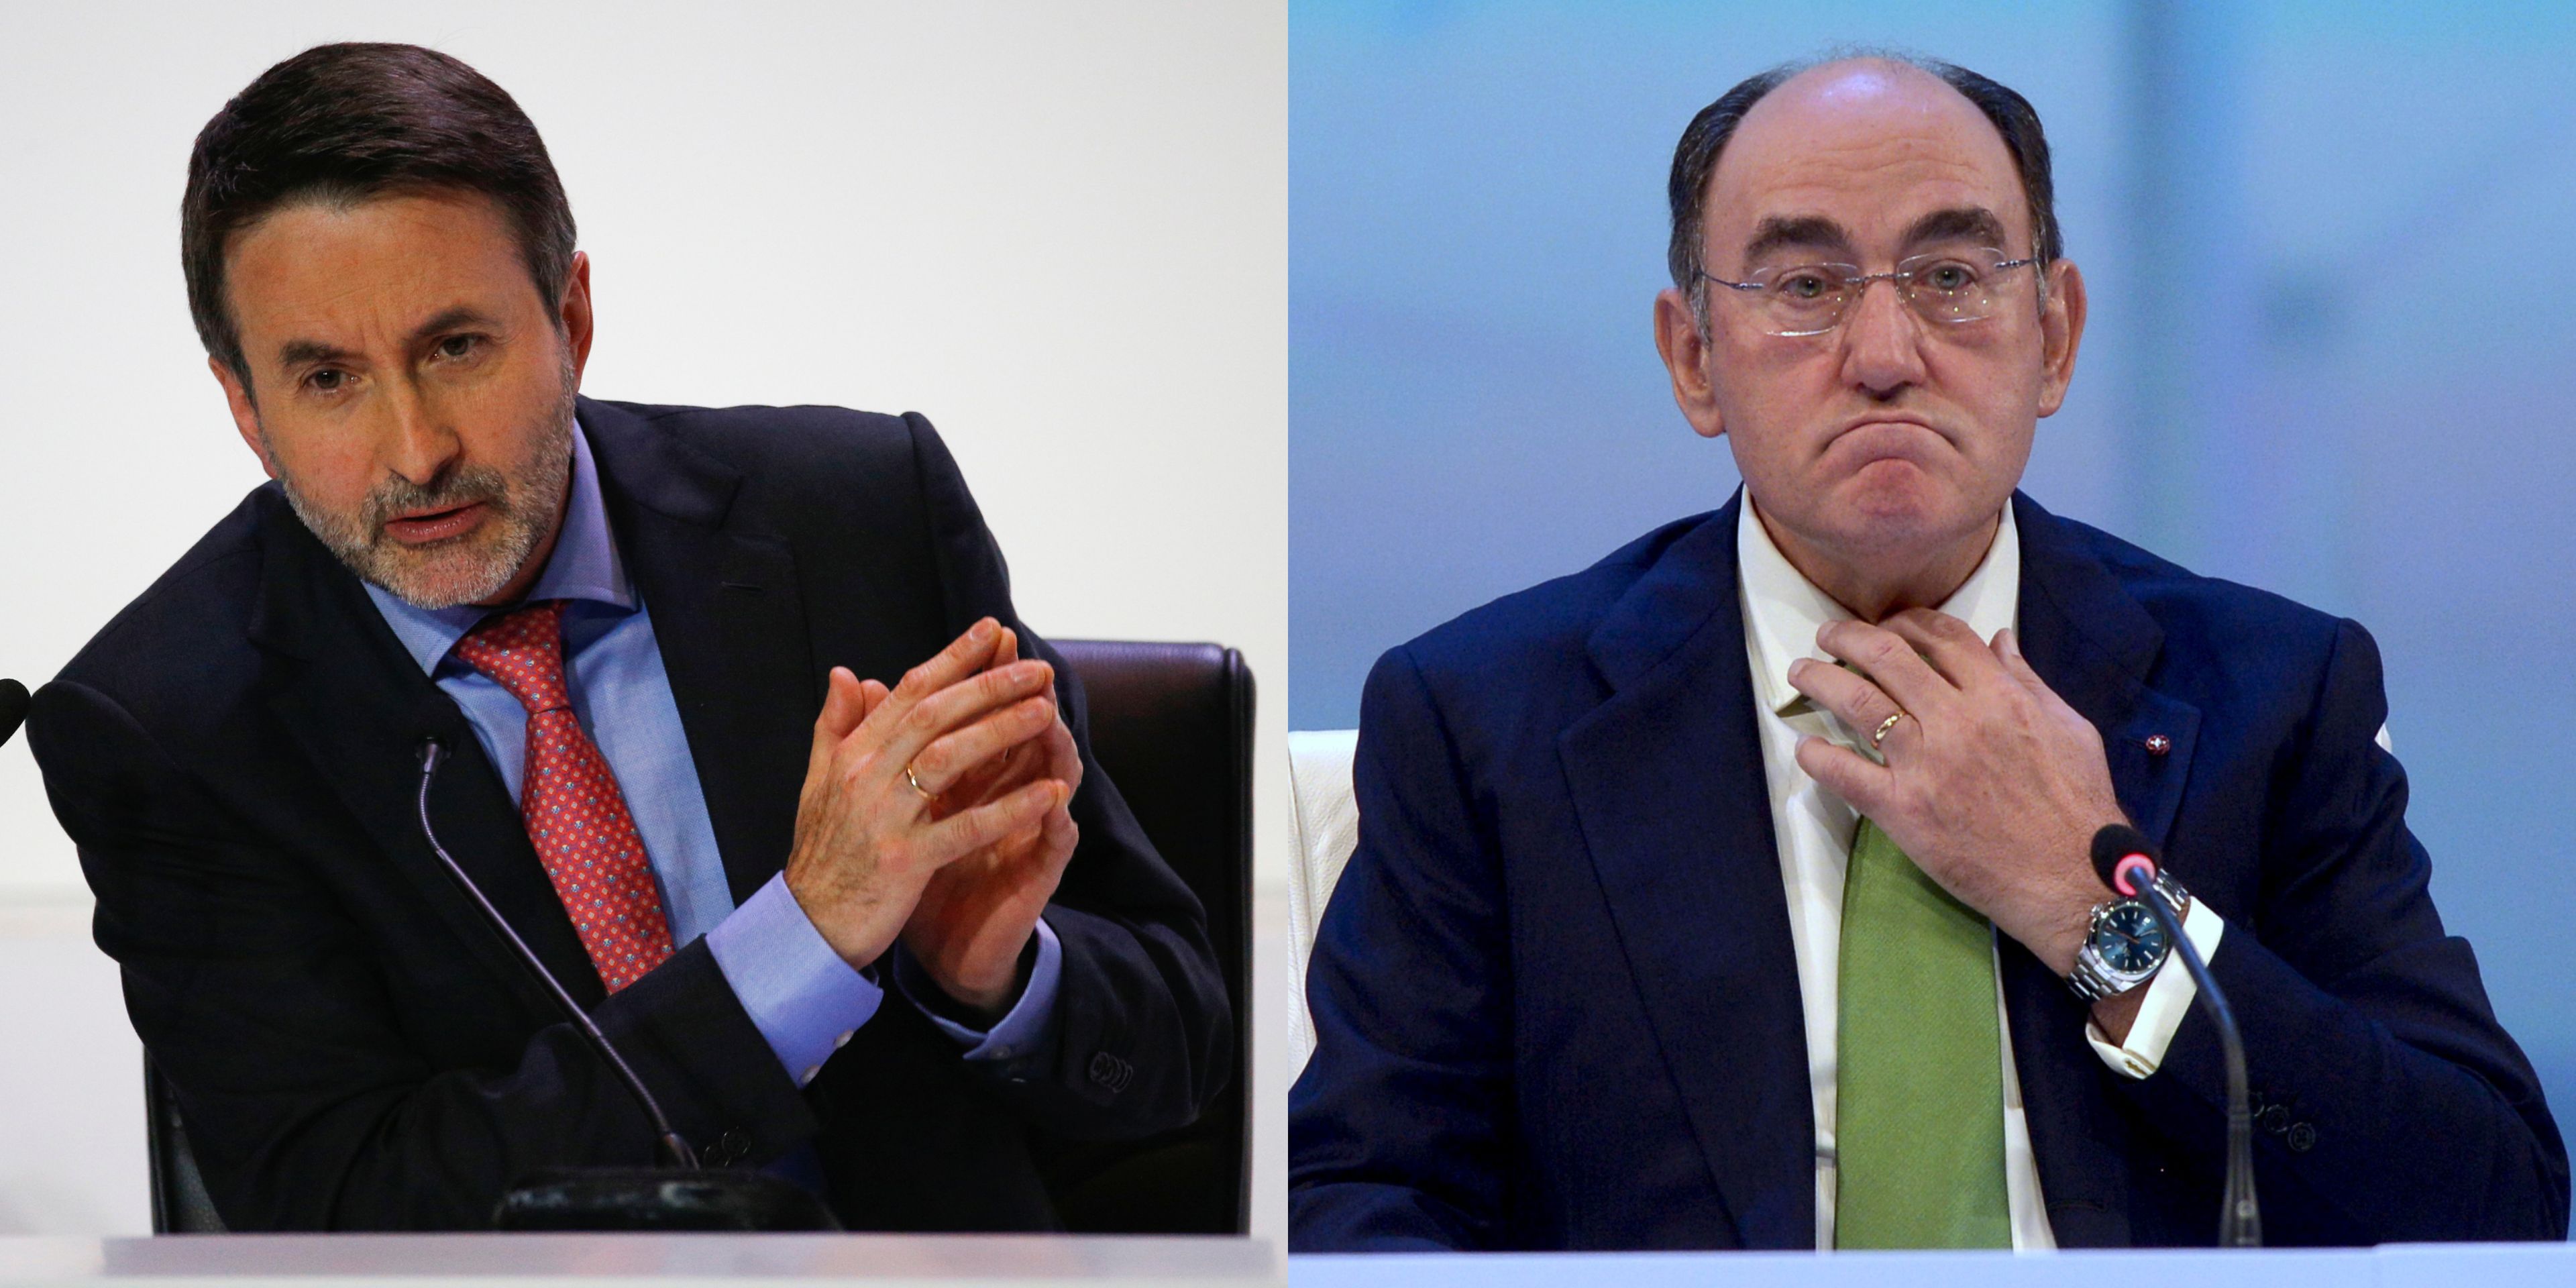 El consejero delegado de Repsol, Josu Jon Imaz, y el presidente de Iberdrola, Ignacio Sánchez Galán